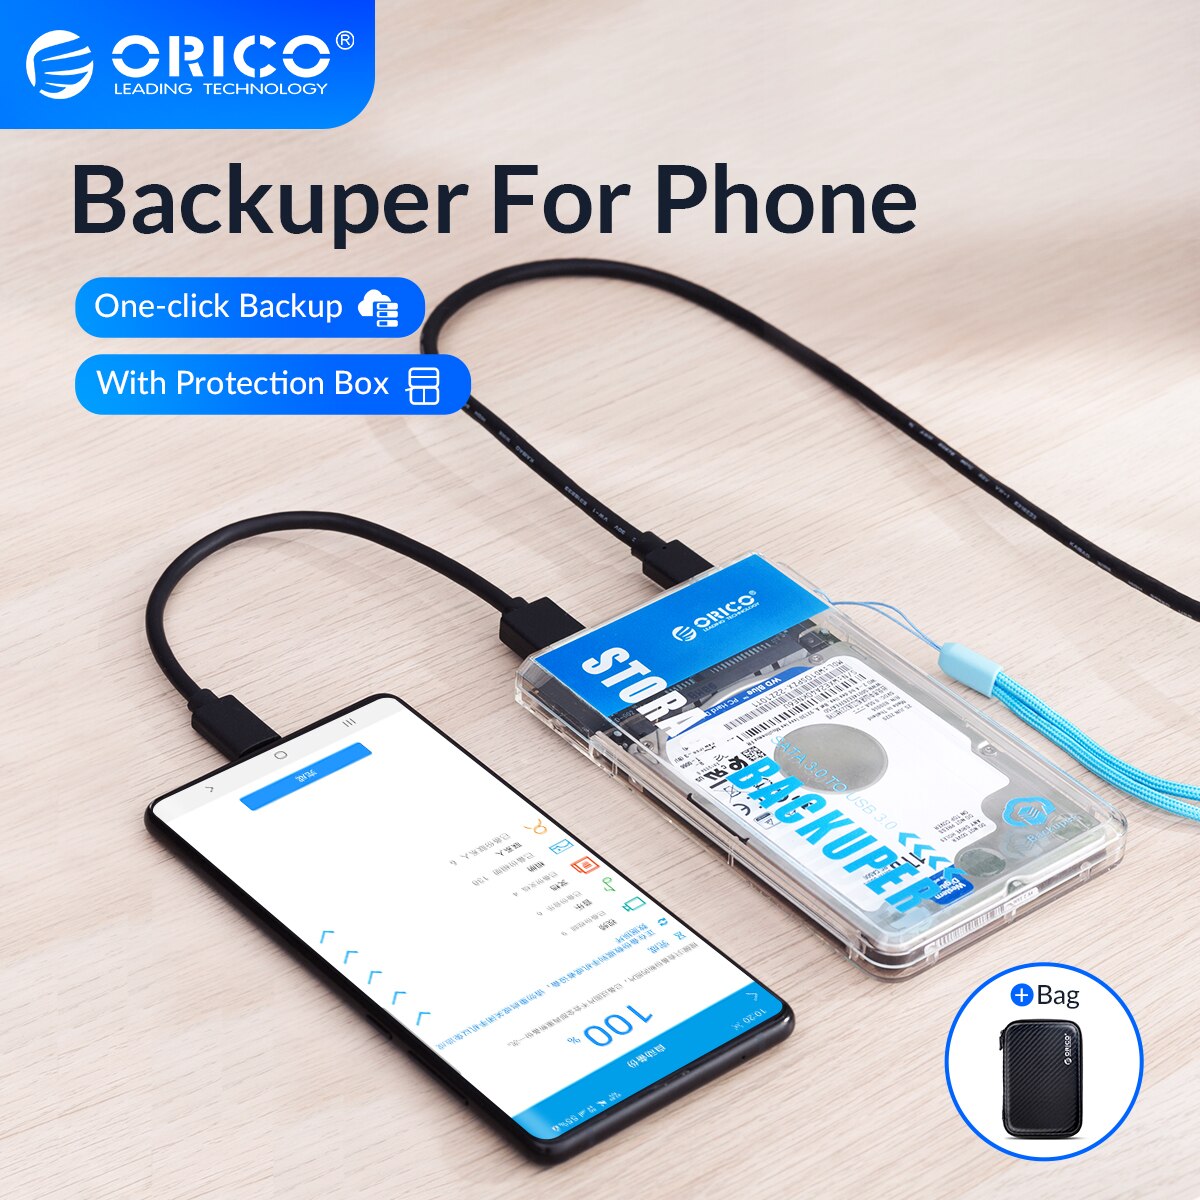 Orico Backuper Met Bescherming Tas Backup Voor Telefoon Ondersteuning 4Tb Capaciteit One-Touch Backup/Verwijderen 5Gbps sata Naar Usb C Port Power